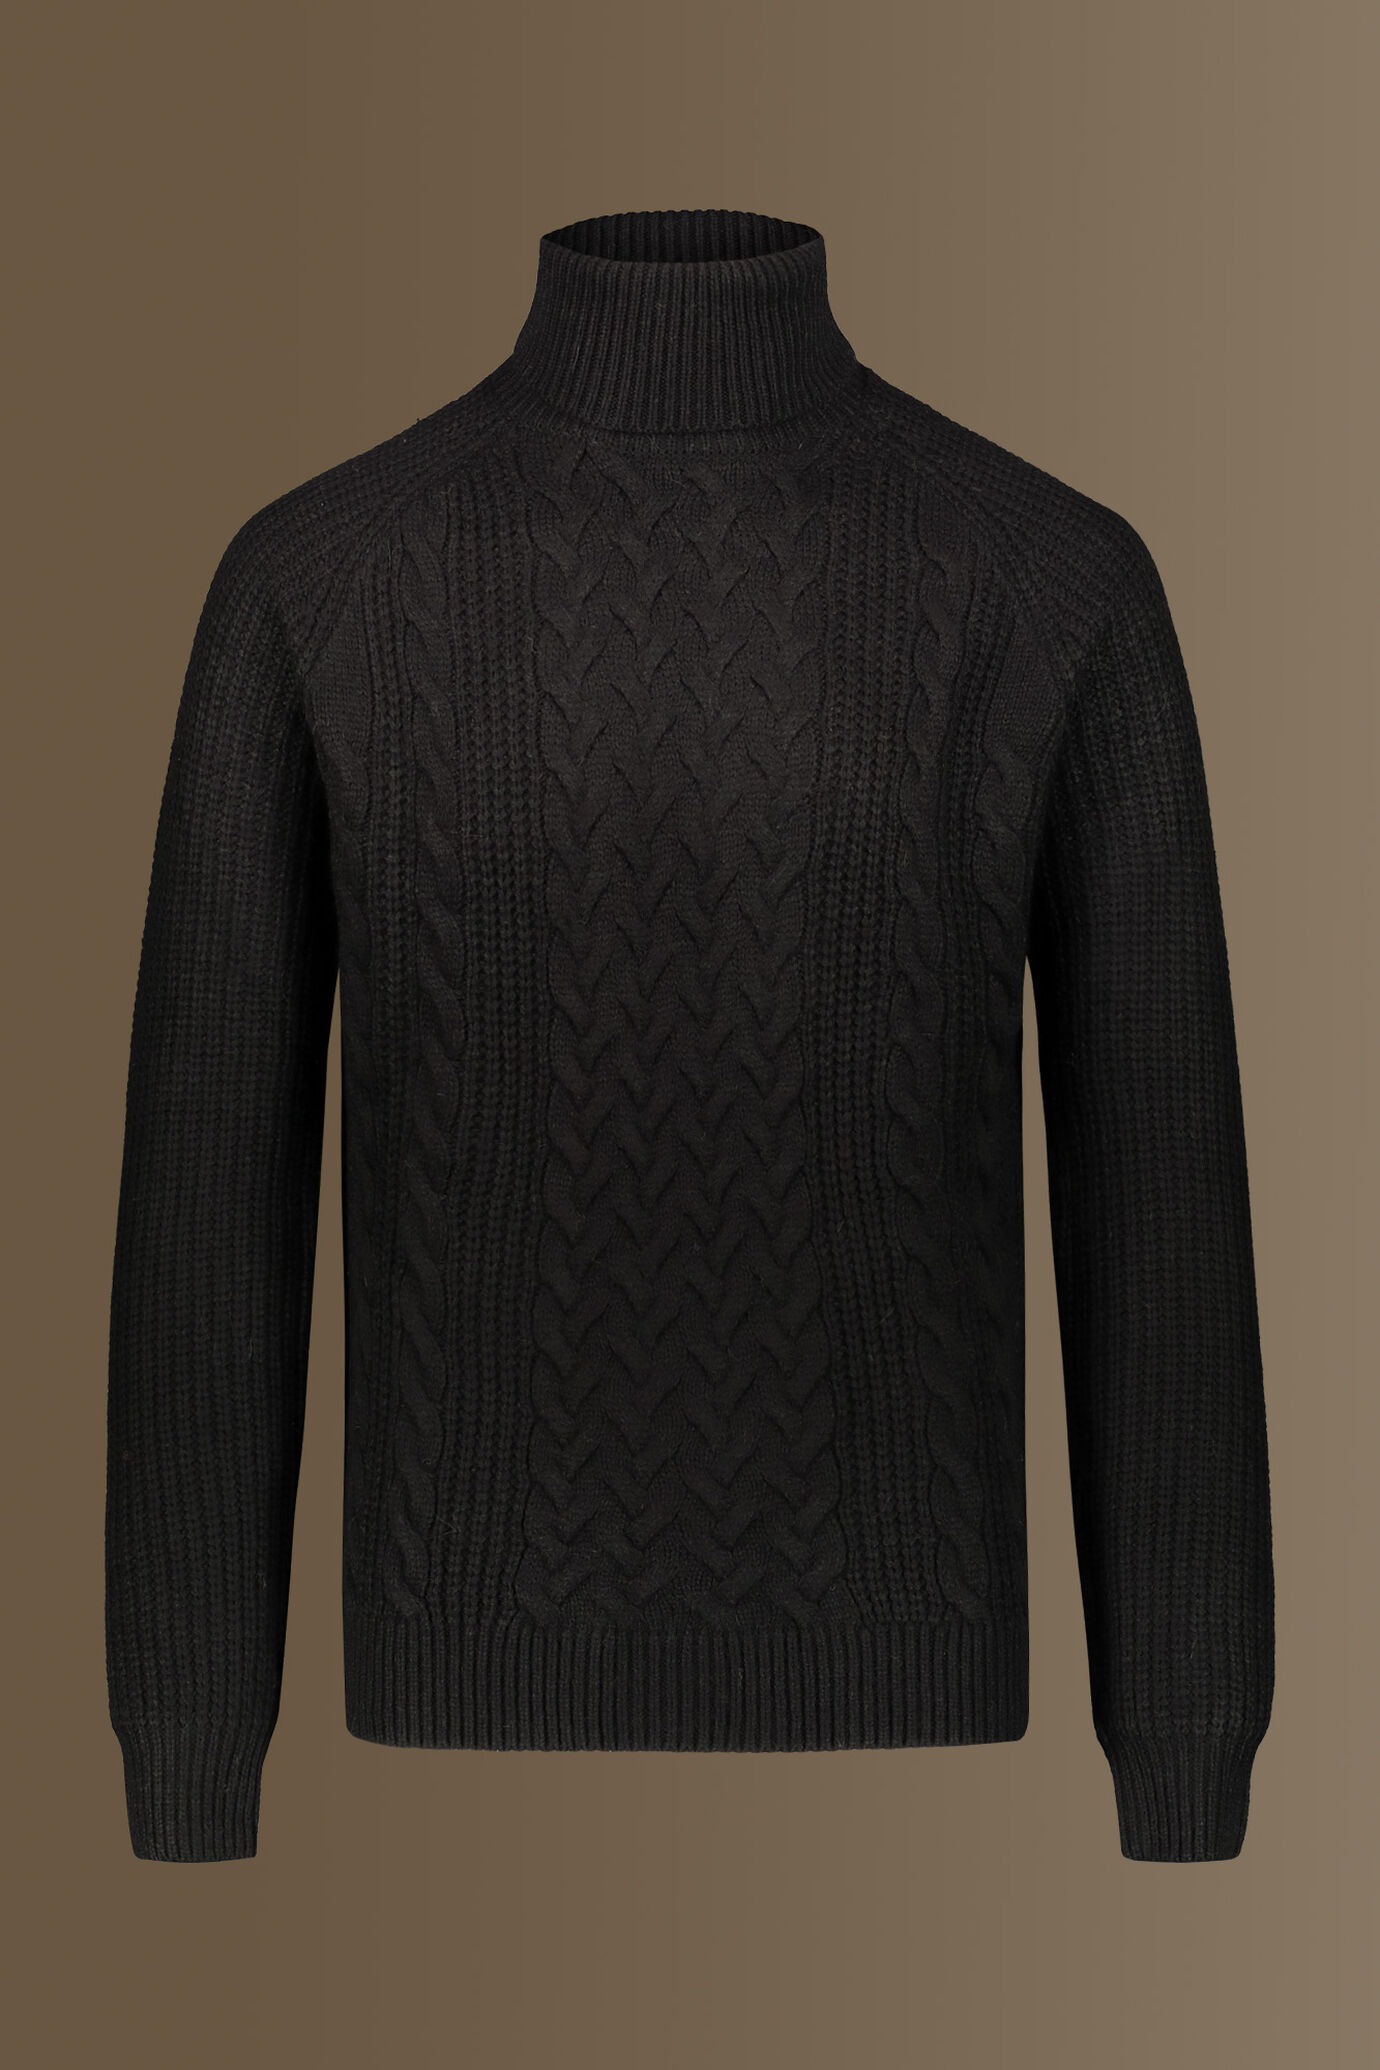 Turtle neck sweater wool blend raglan sleeves image number 0